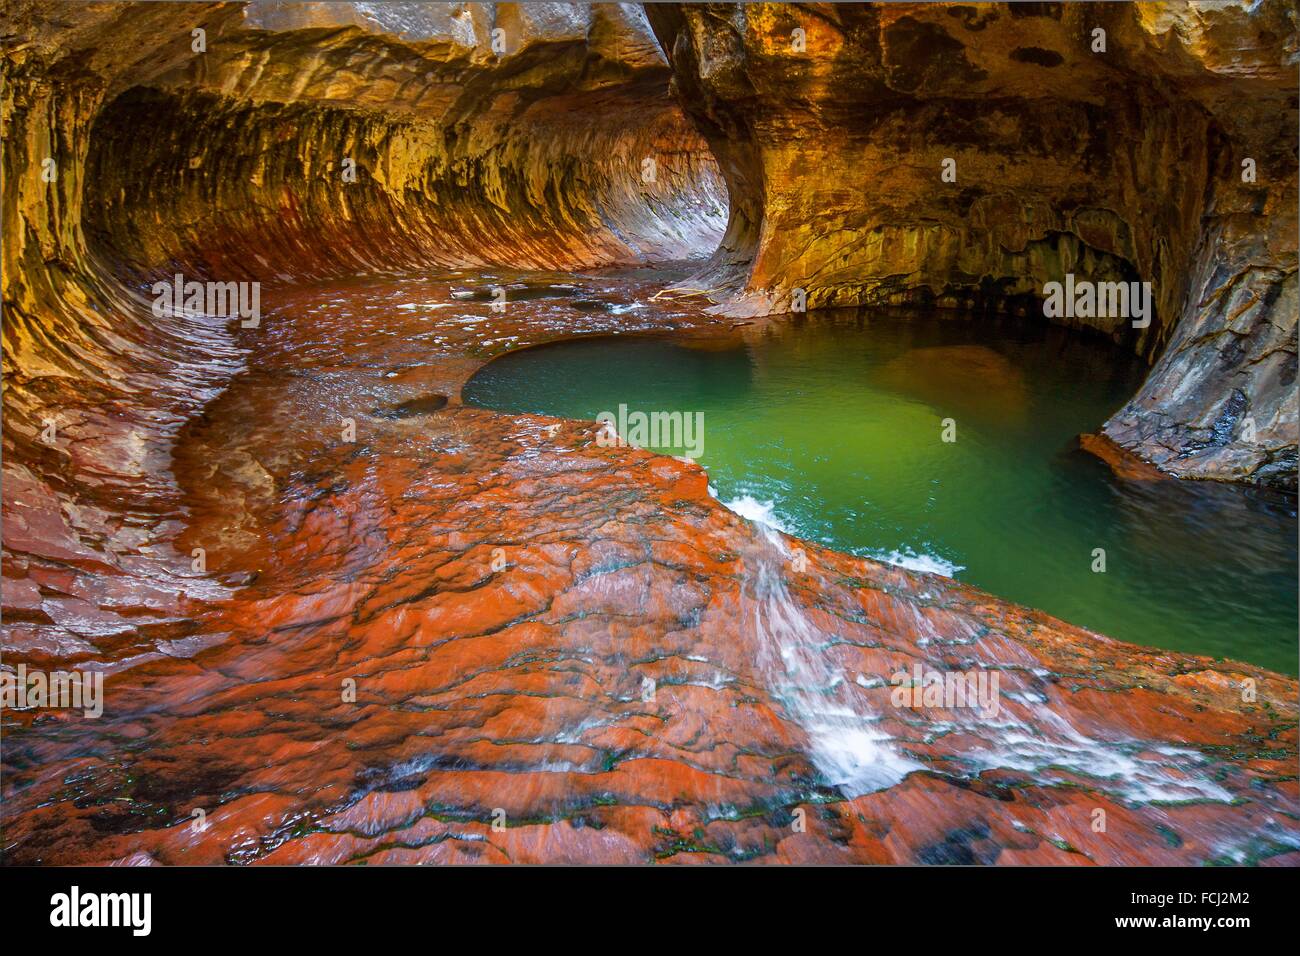 Des couleurs vives s'animent au passage inférieur à Zion National Park, Utah. Banque D'Images